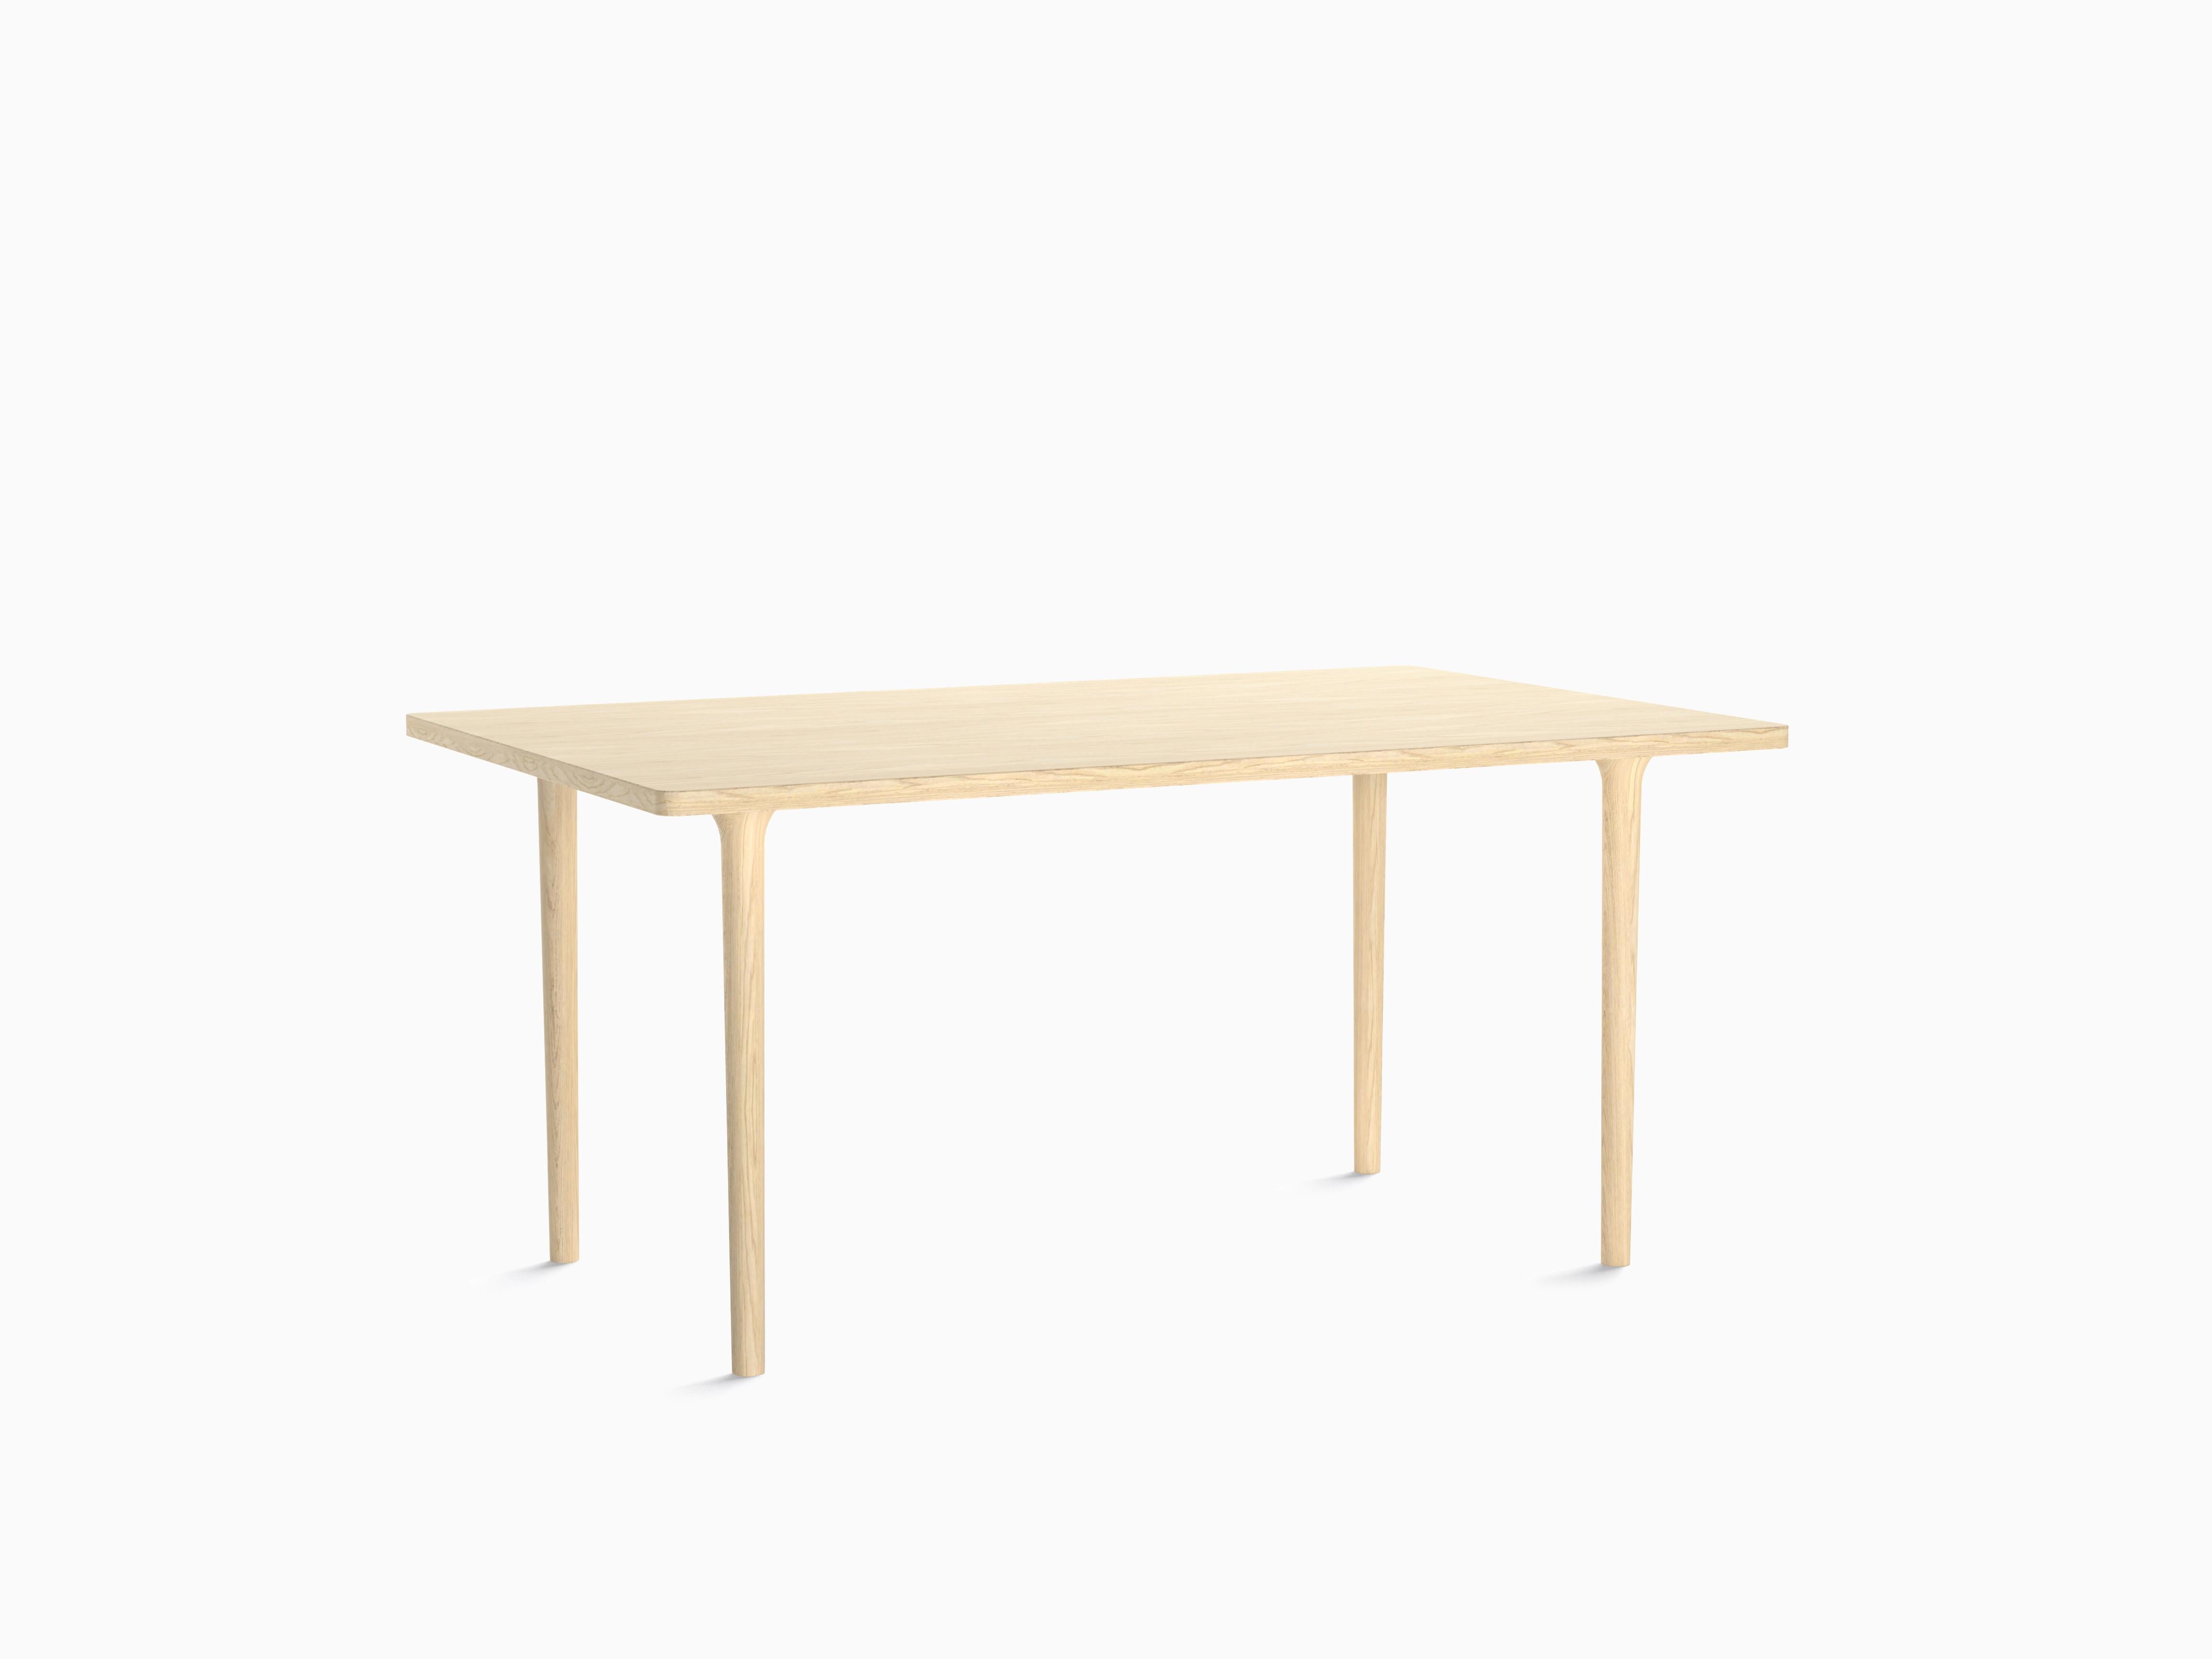 CAST Tisch - Ein einfaches und vielseitiges Design, das mit verschiedenen Tischplattenformen und -größen verwendet werden kann - ob rund, oval, rechteckig oder quadratisch. Er ist ideal für eine breite Palette von Anwendungen, sei es zu Hause, auch